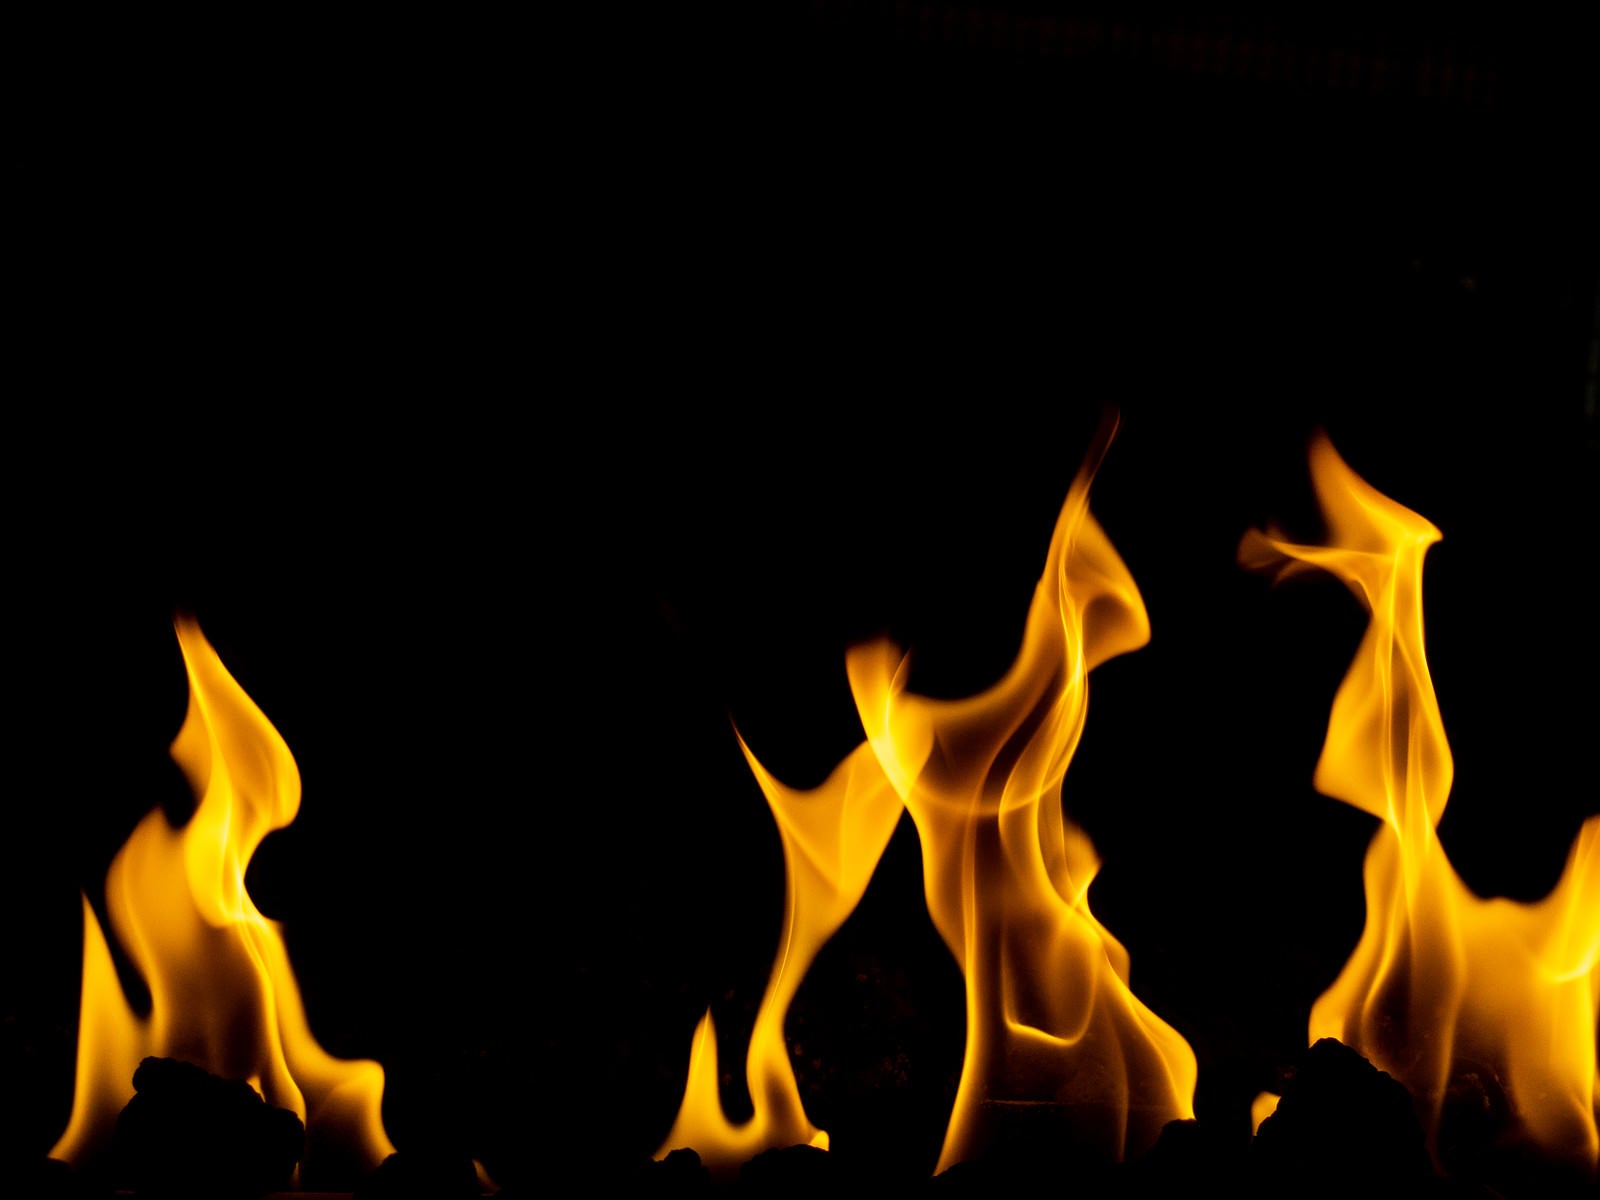 「激しく燃える火」の写真